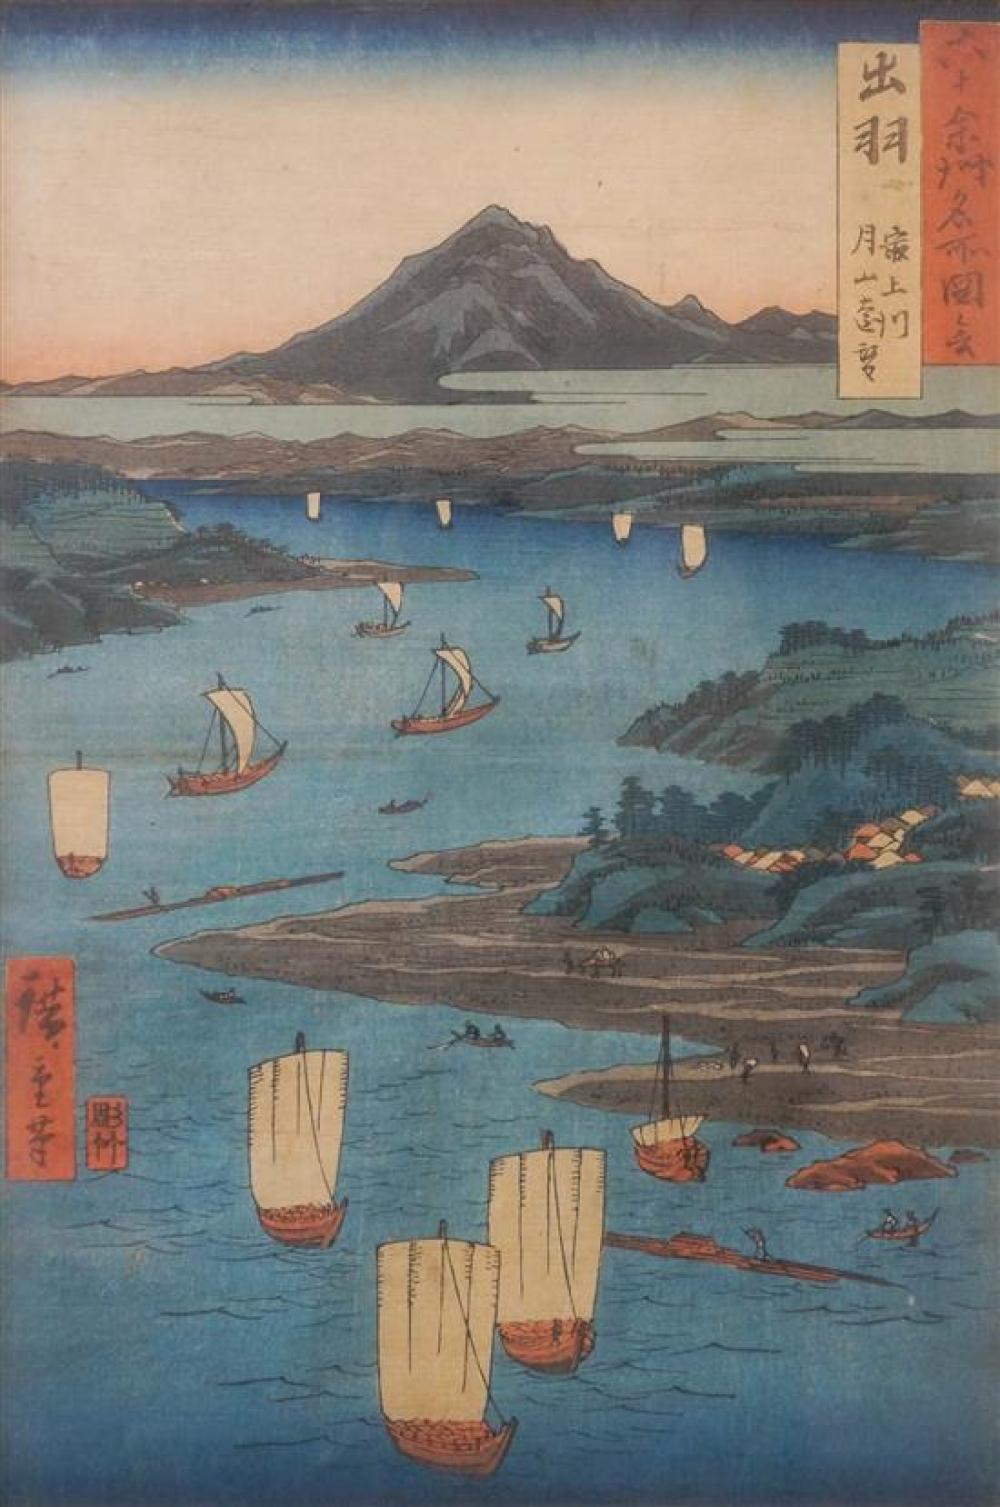 UTAGAWA HIROSHIGE, VIEW OF MOUNT